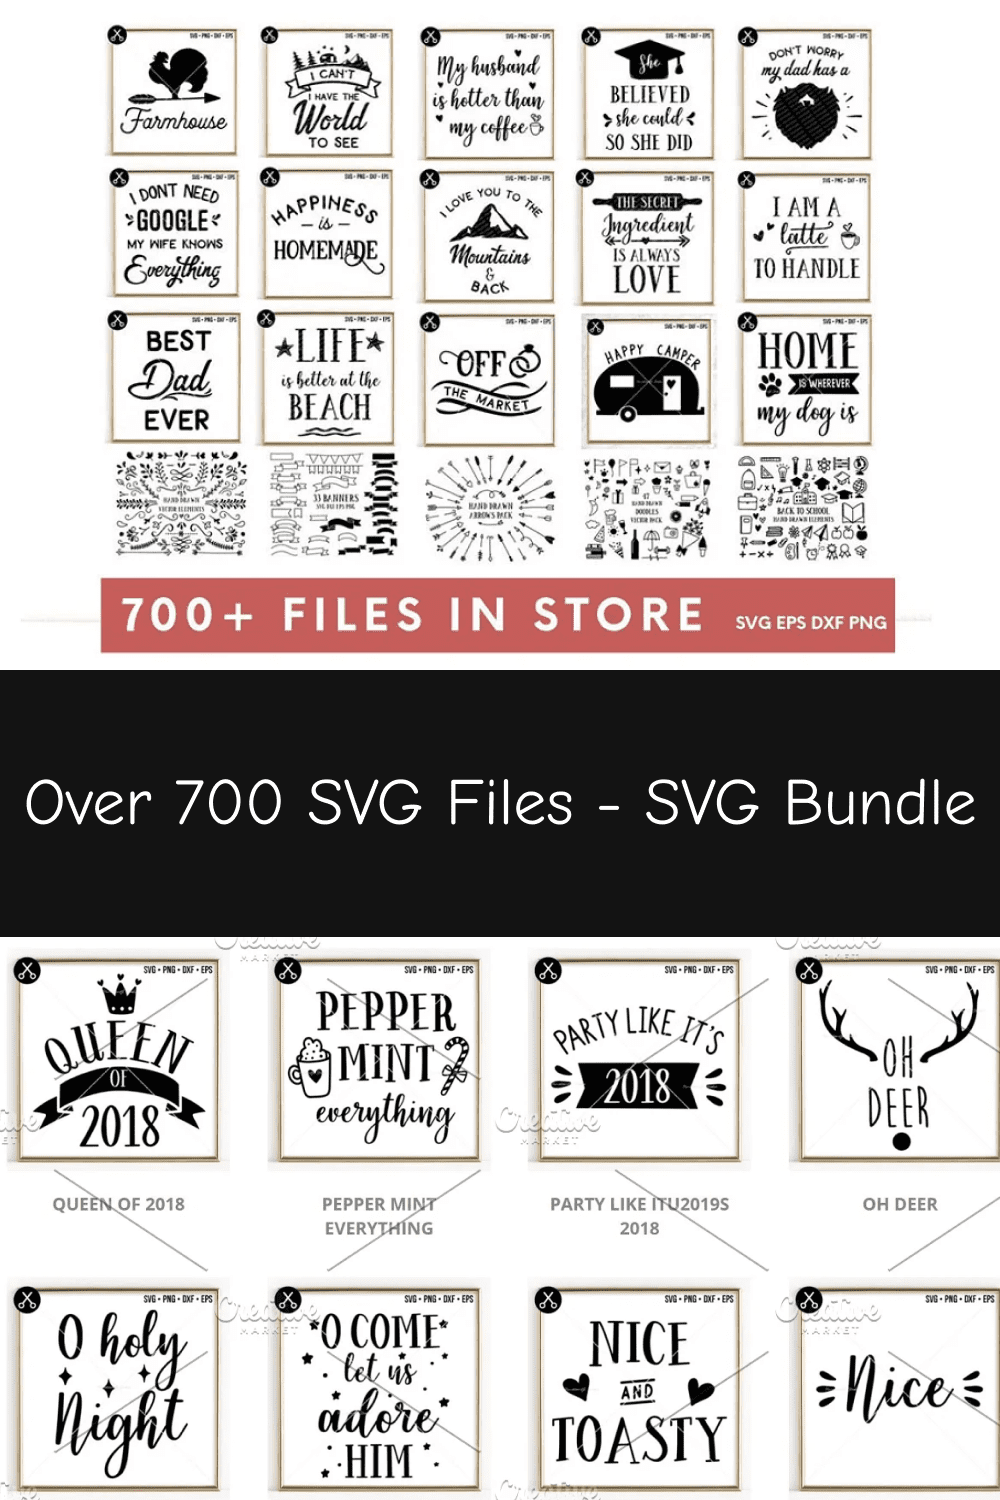 Over 700 SVG Files - SVG Bundle.